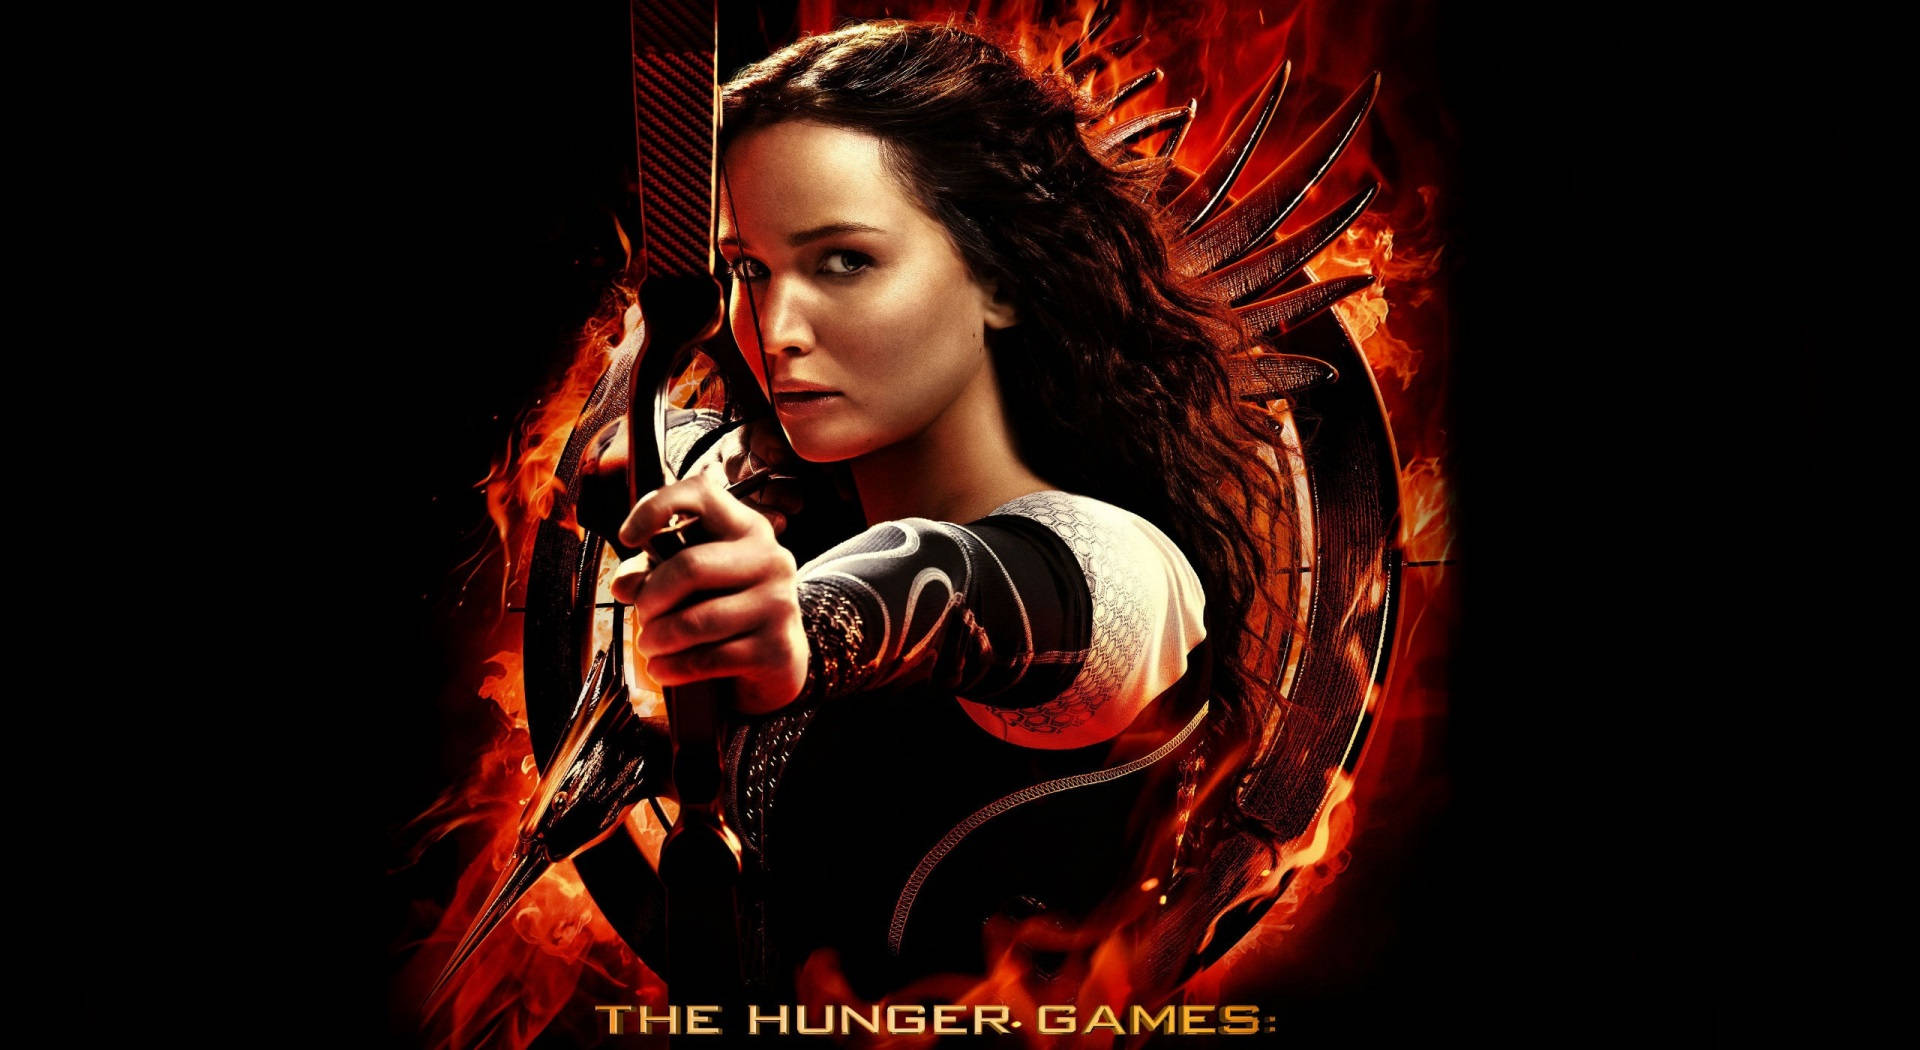 Katniss Everdeen Aiming Her Arrow - The Hunger Games Wallpaper Background